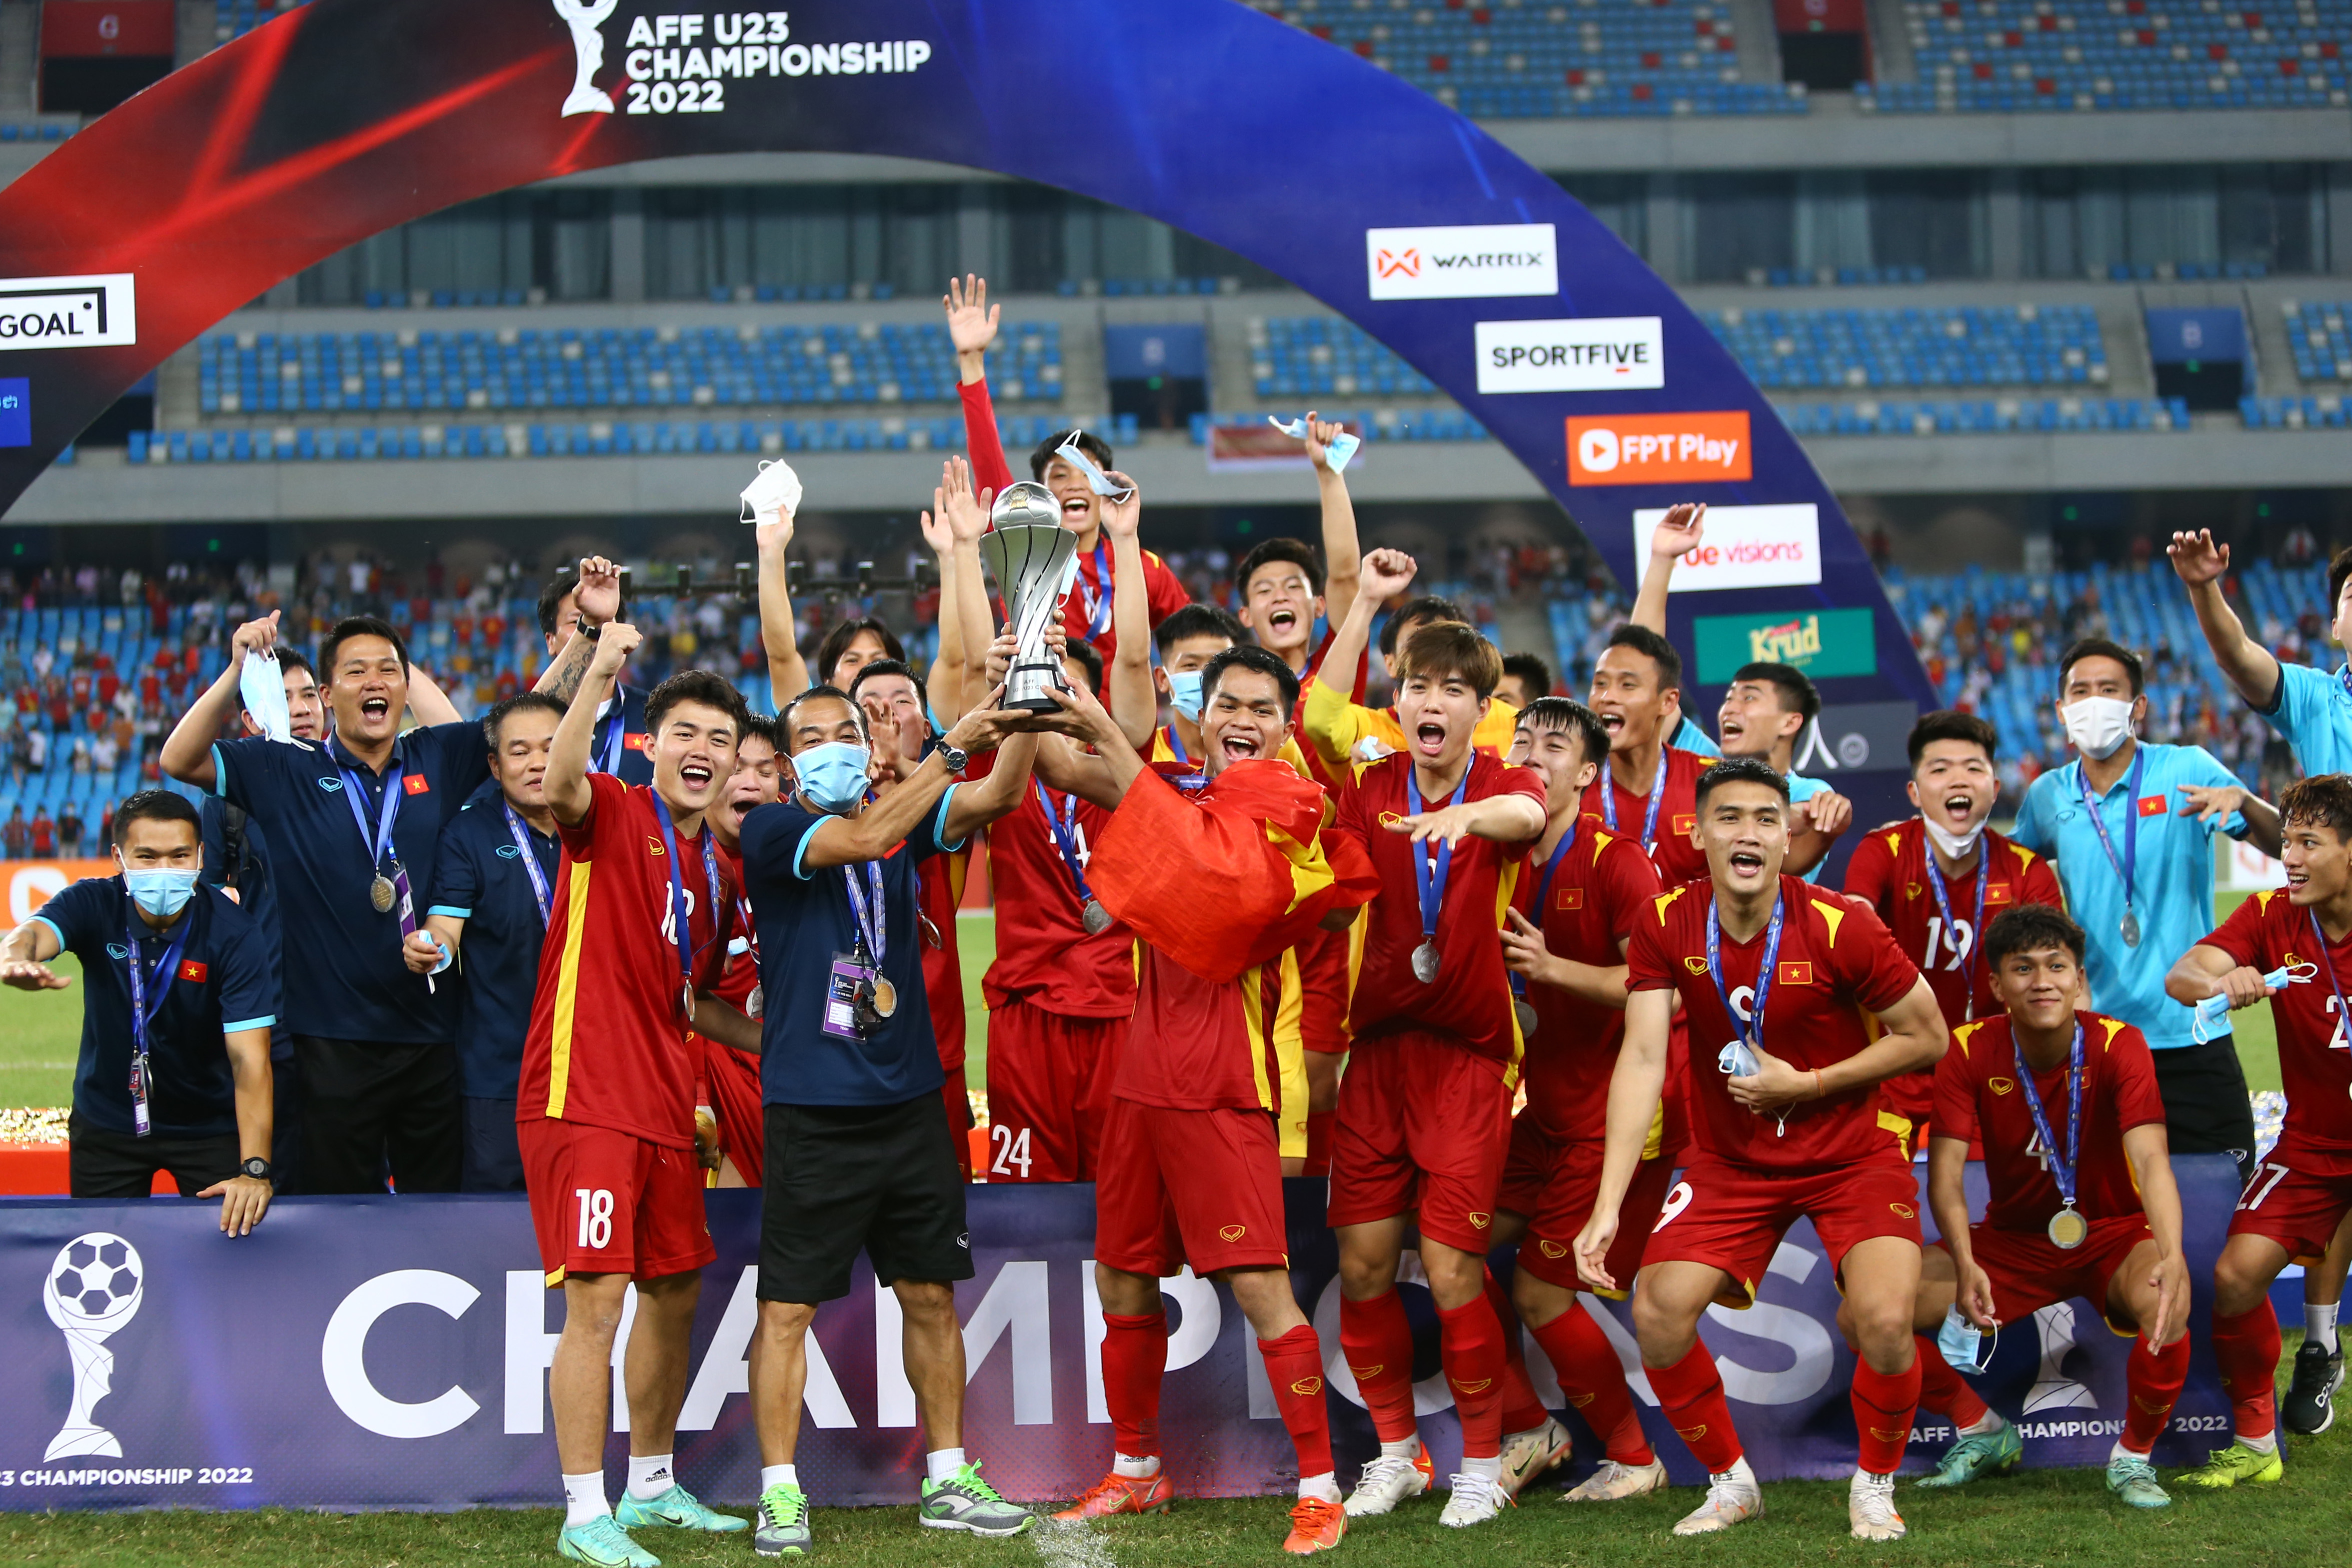 Vô địch Đông Nam Á: Chờ đón hình ảnh rực rỡ về chức vô địch Đông Nam Á của các đội tuyển Việt Nam trong các môn thể thao, với sự cổ vũ hết mình từ người hâm mộ trên khán đài.